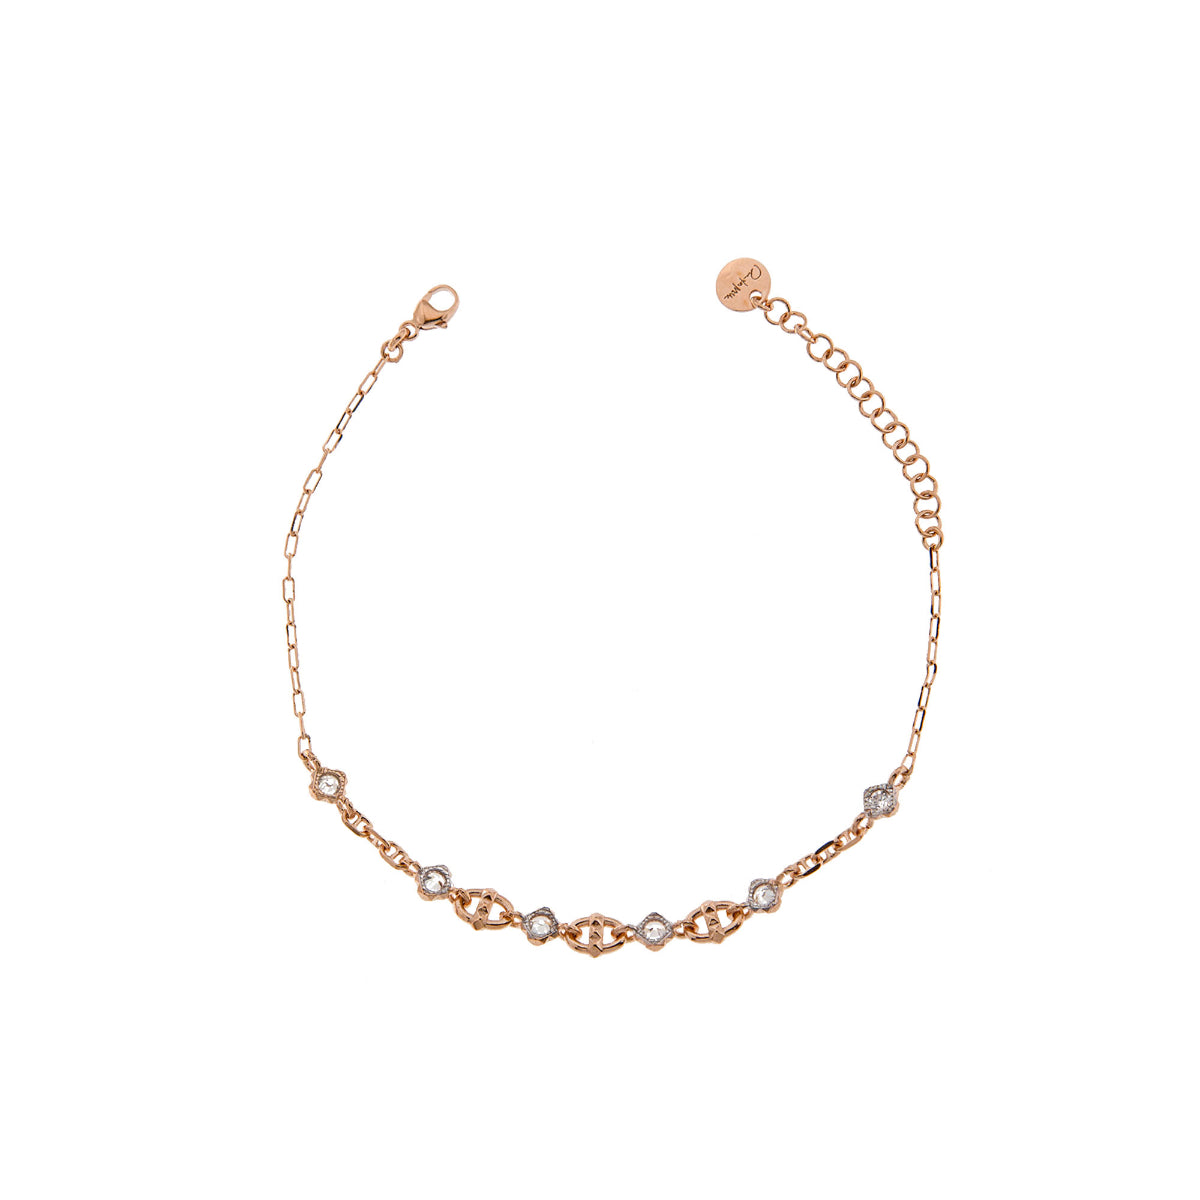 Bracelets - Bracelet with marine links and studs - 2 | Rue des Mille